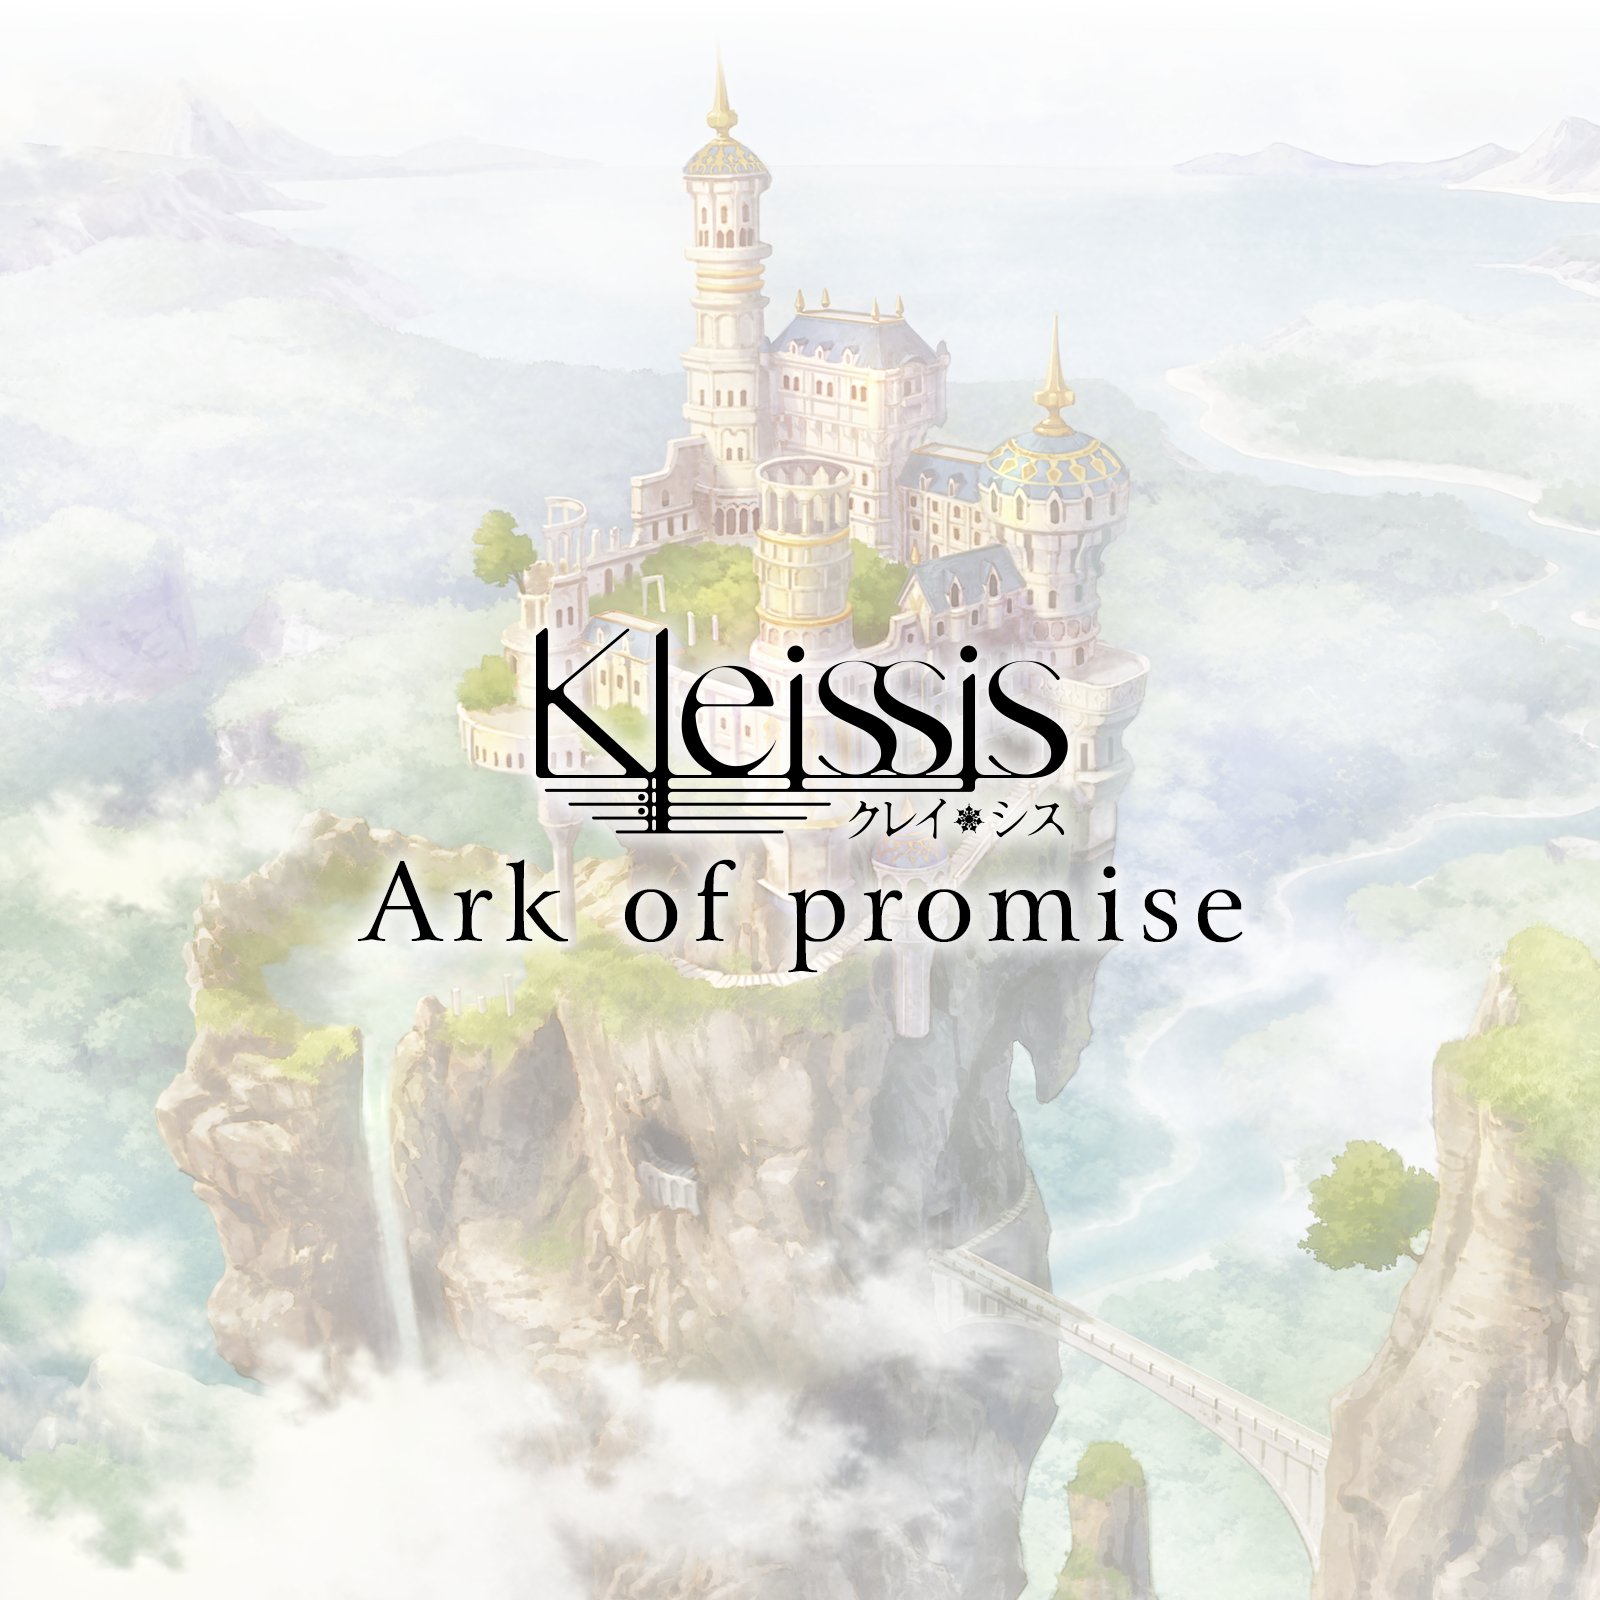 「Ark of promise」